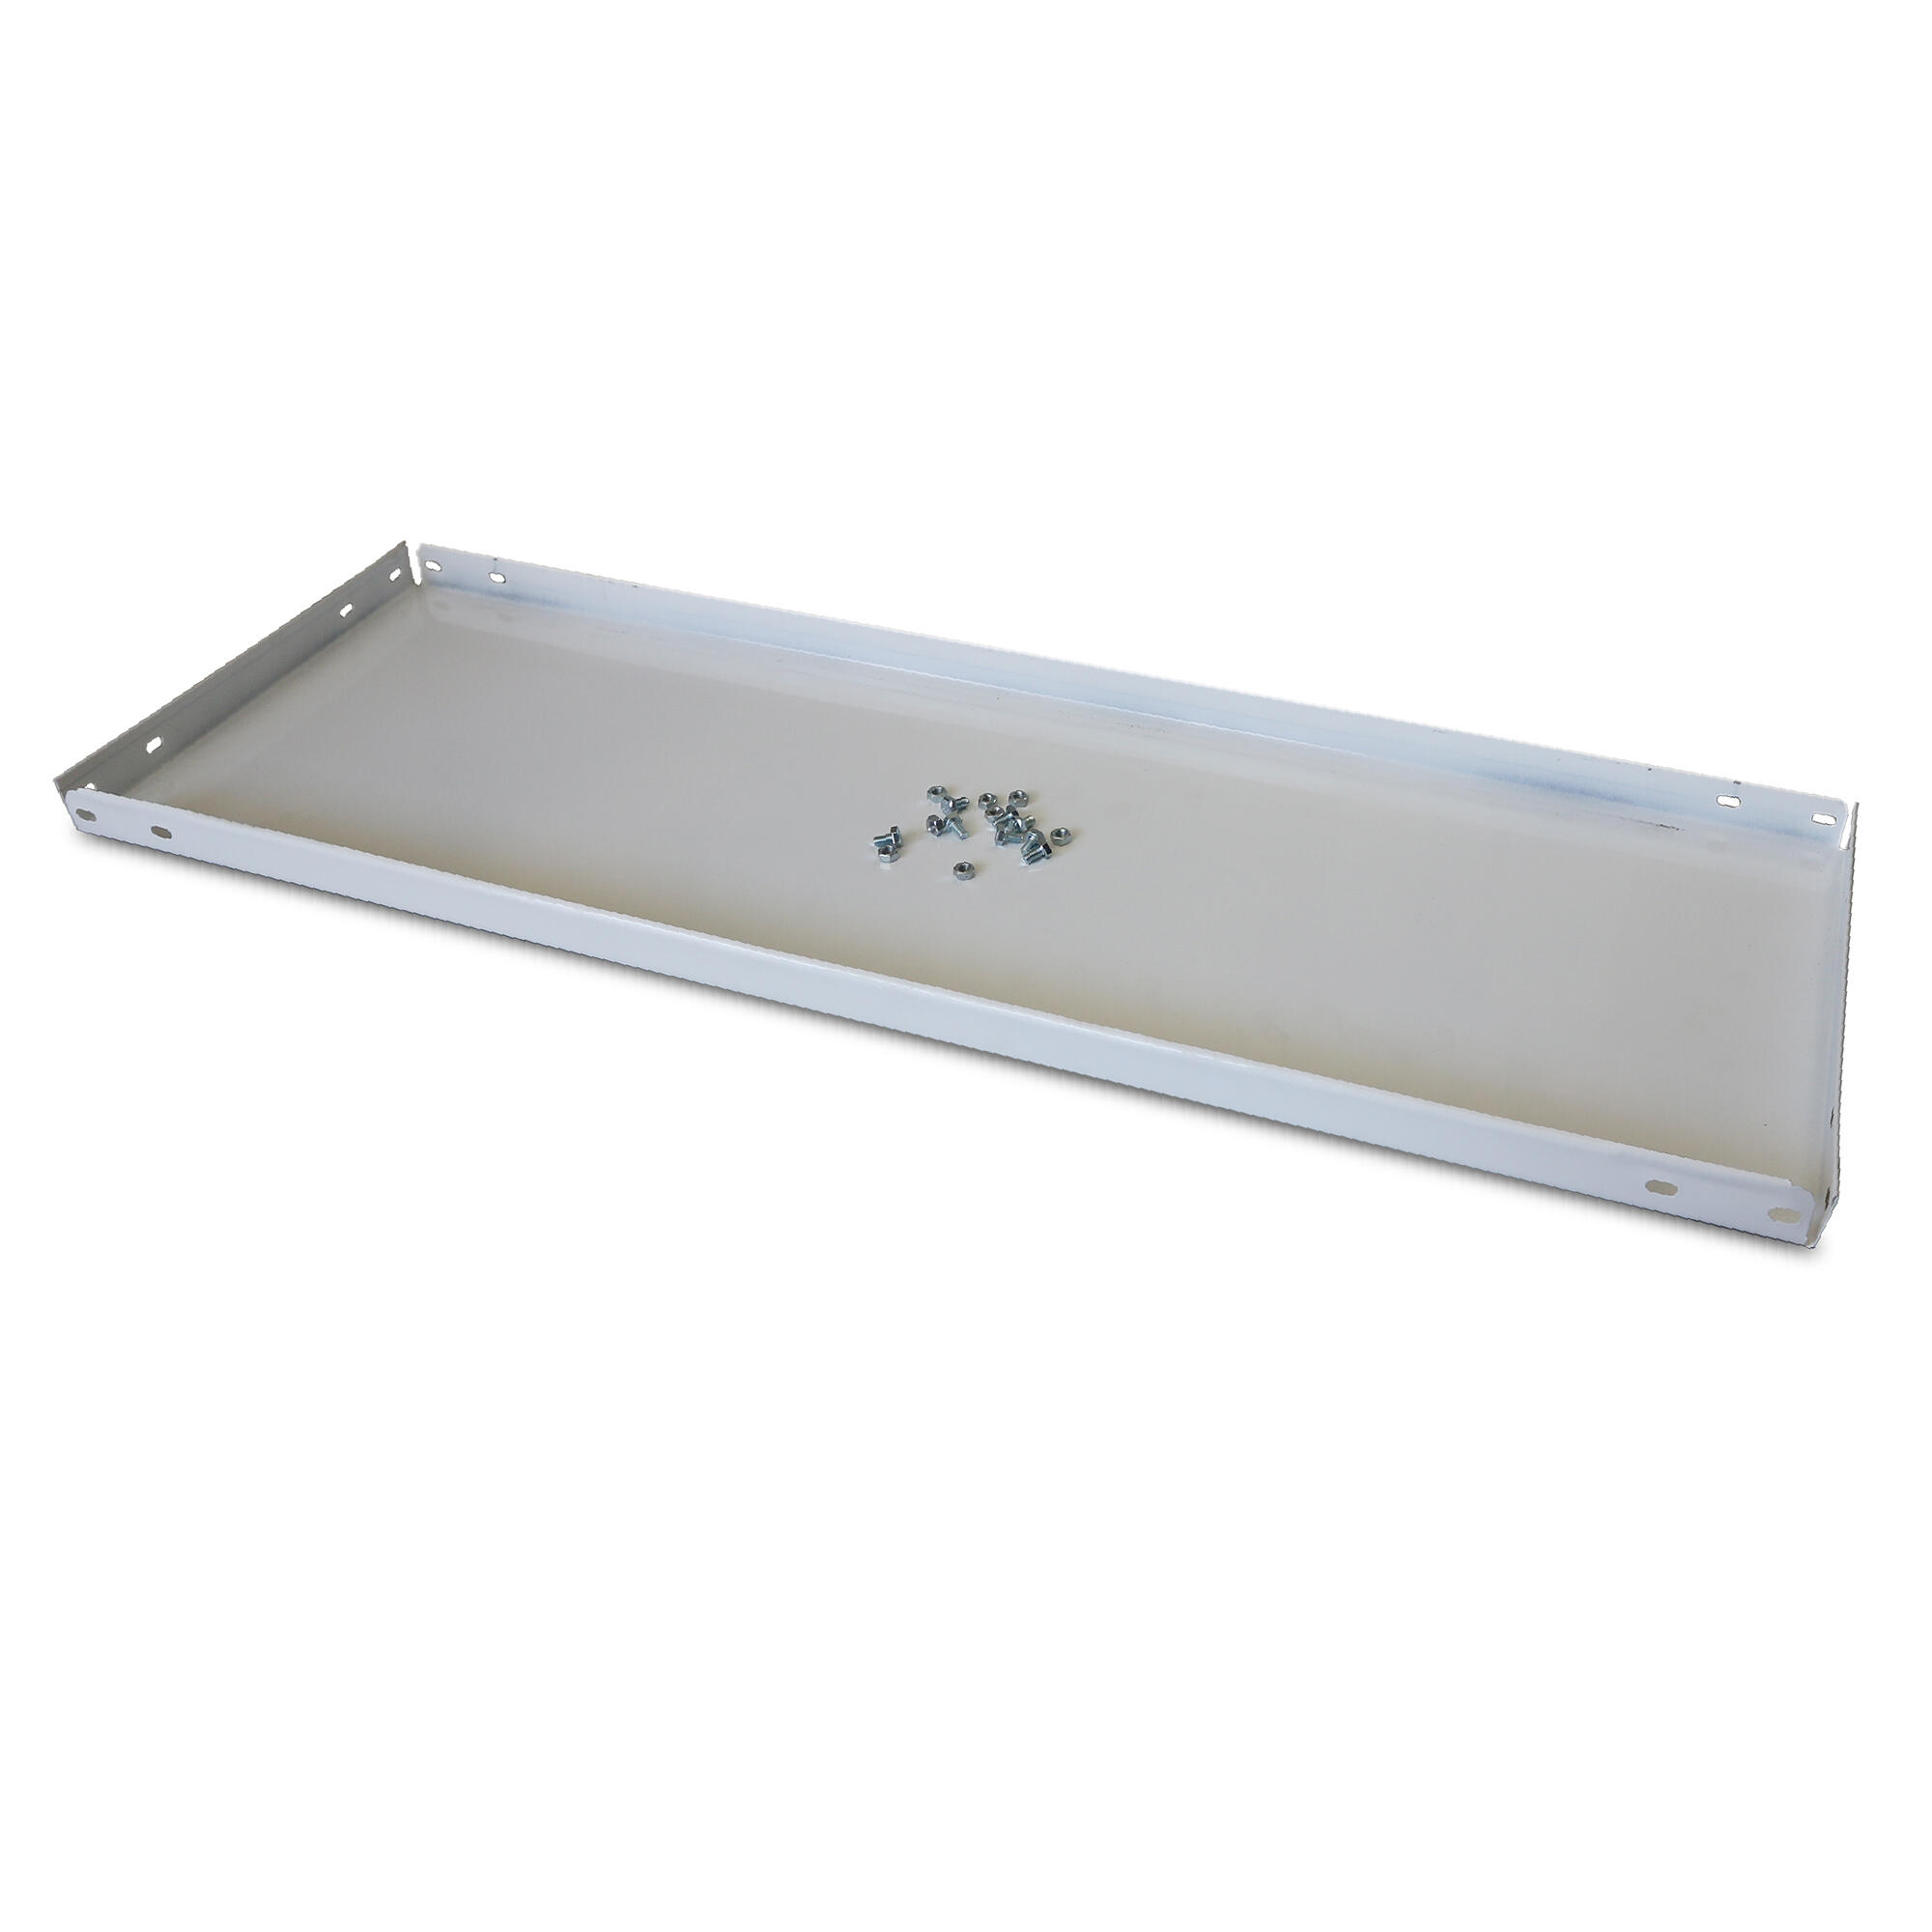 Balda recta para sistema de estantes de acero blanco de 100x50cm